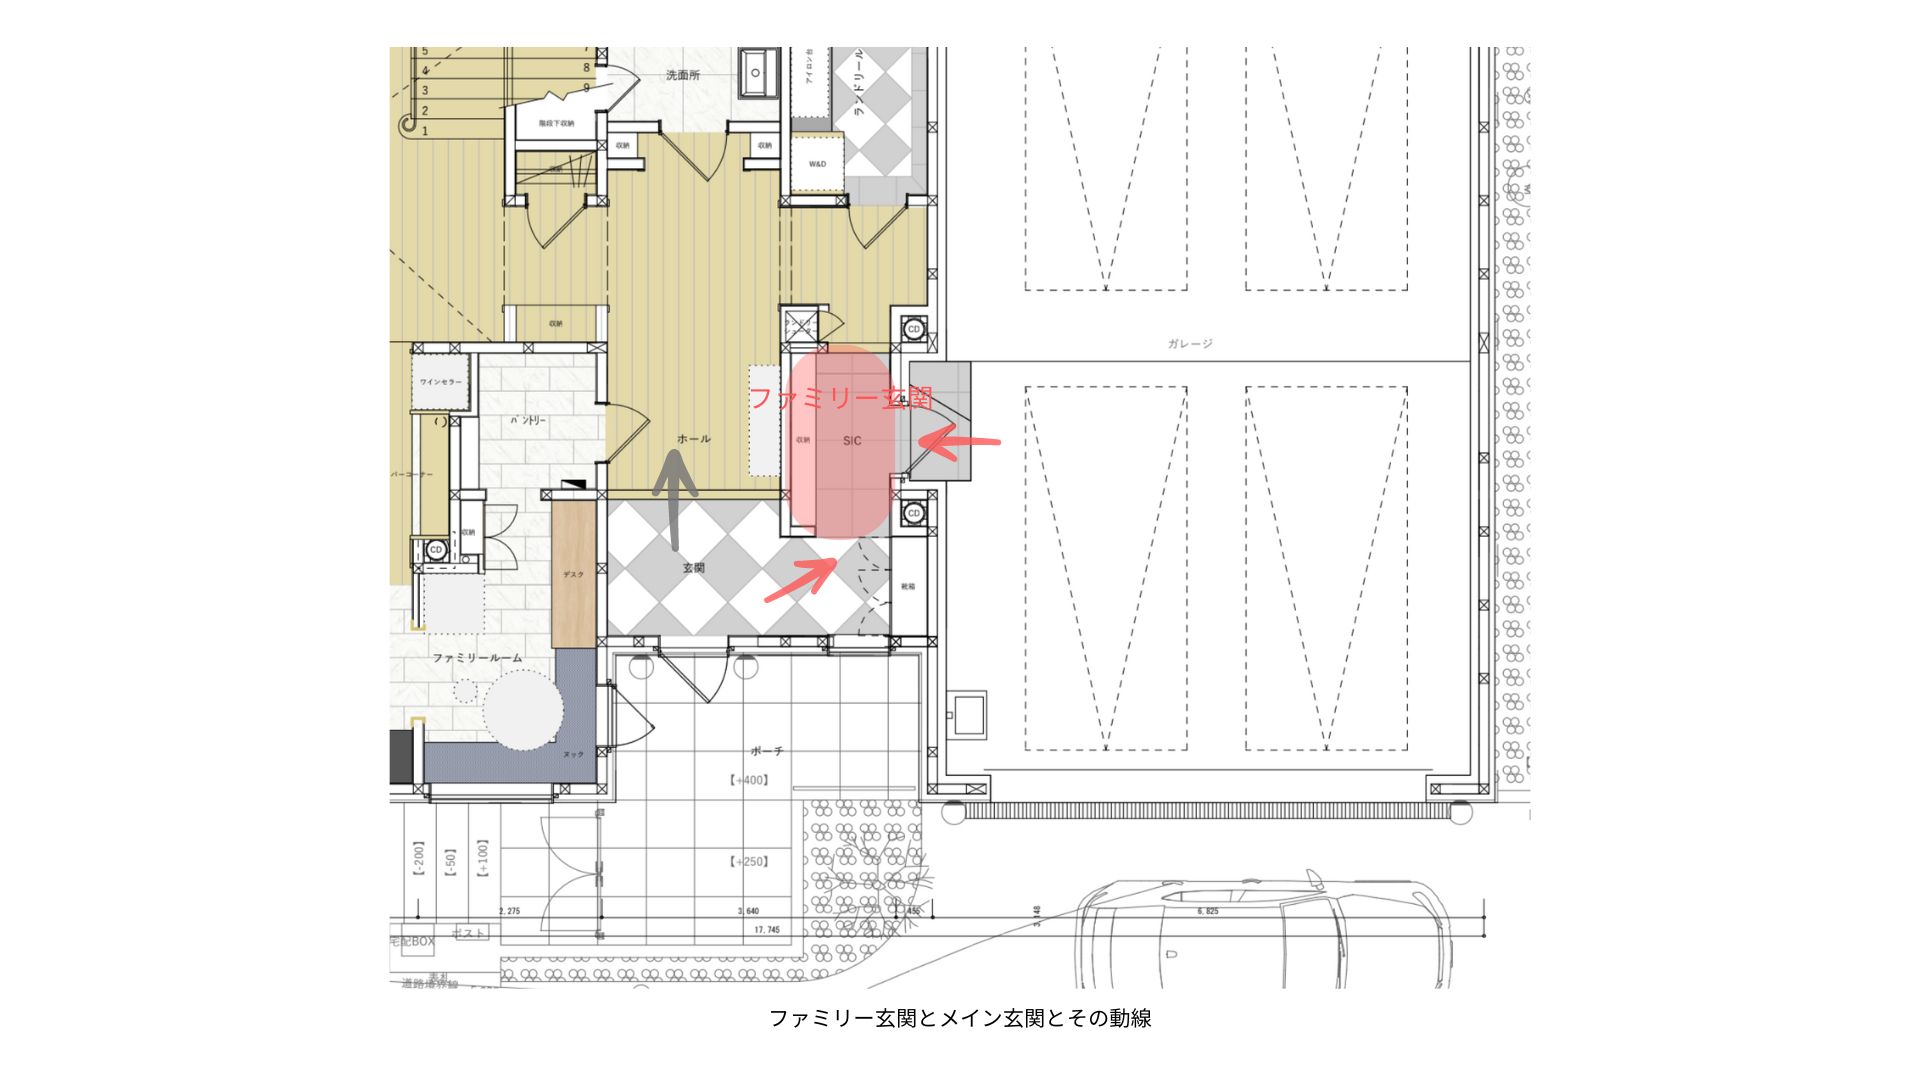 メイン玄関とファミリー玄関-横浜の家_utide-blog